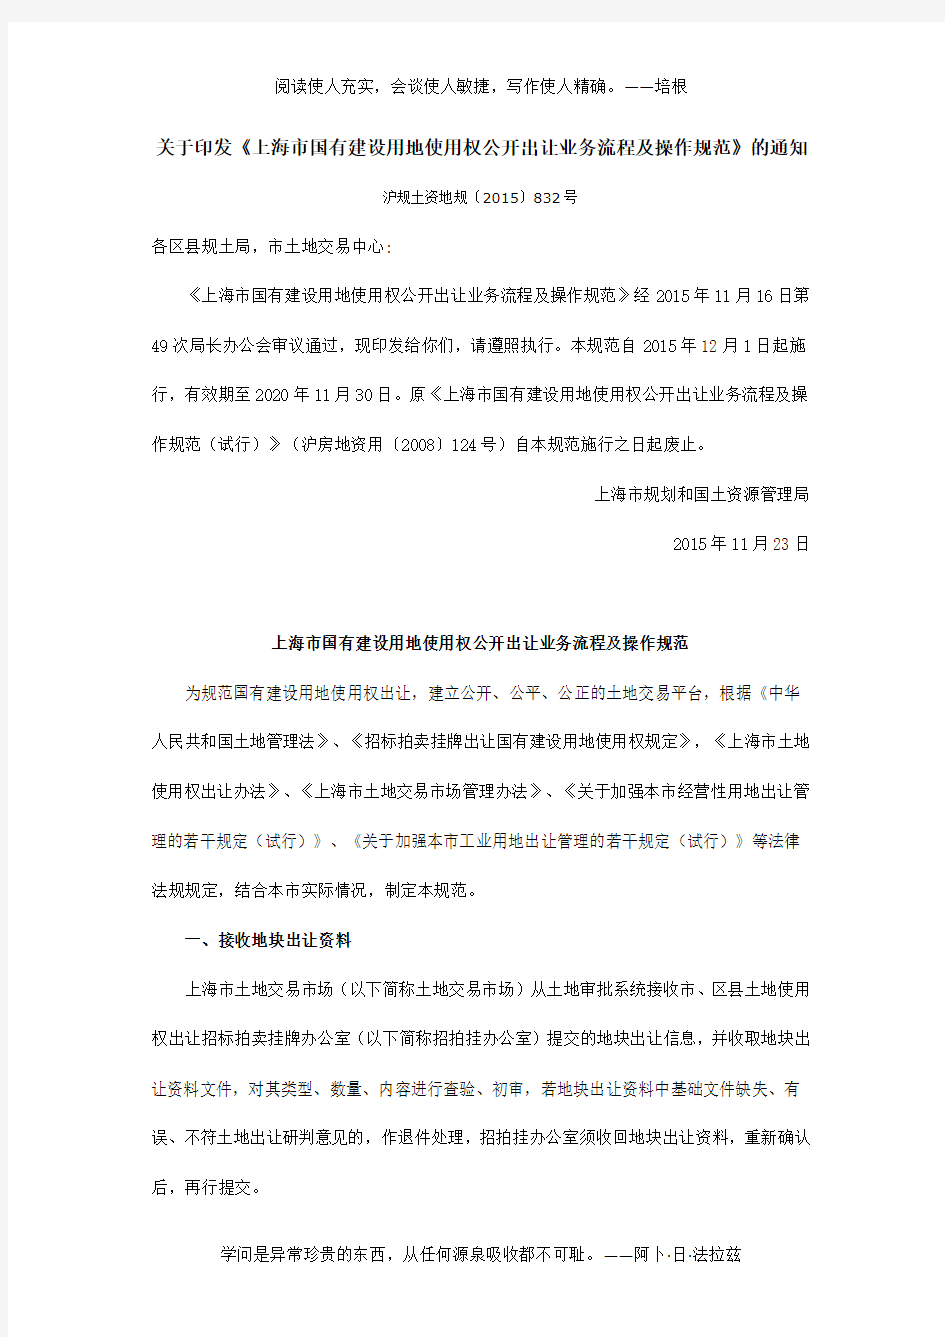 上海市国有建设用地使用权公开出让业务流程及操作规范